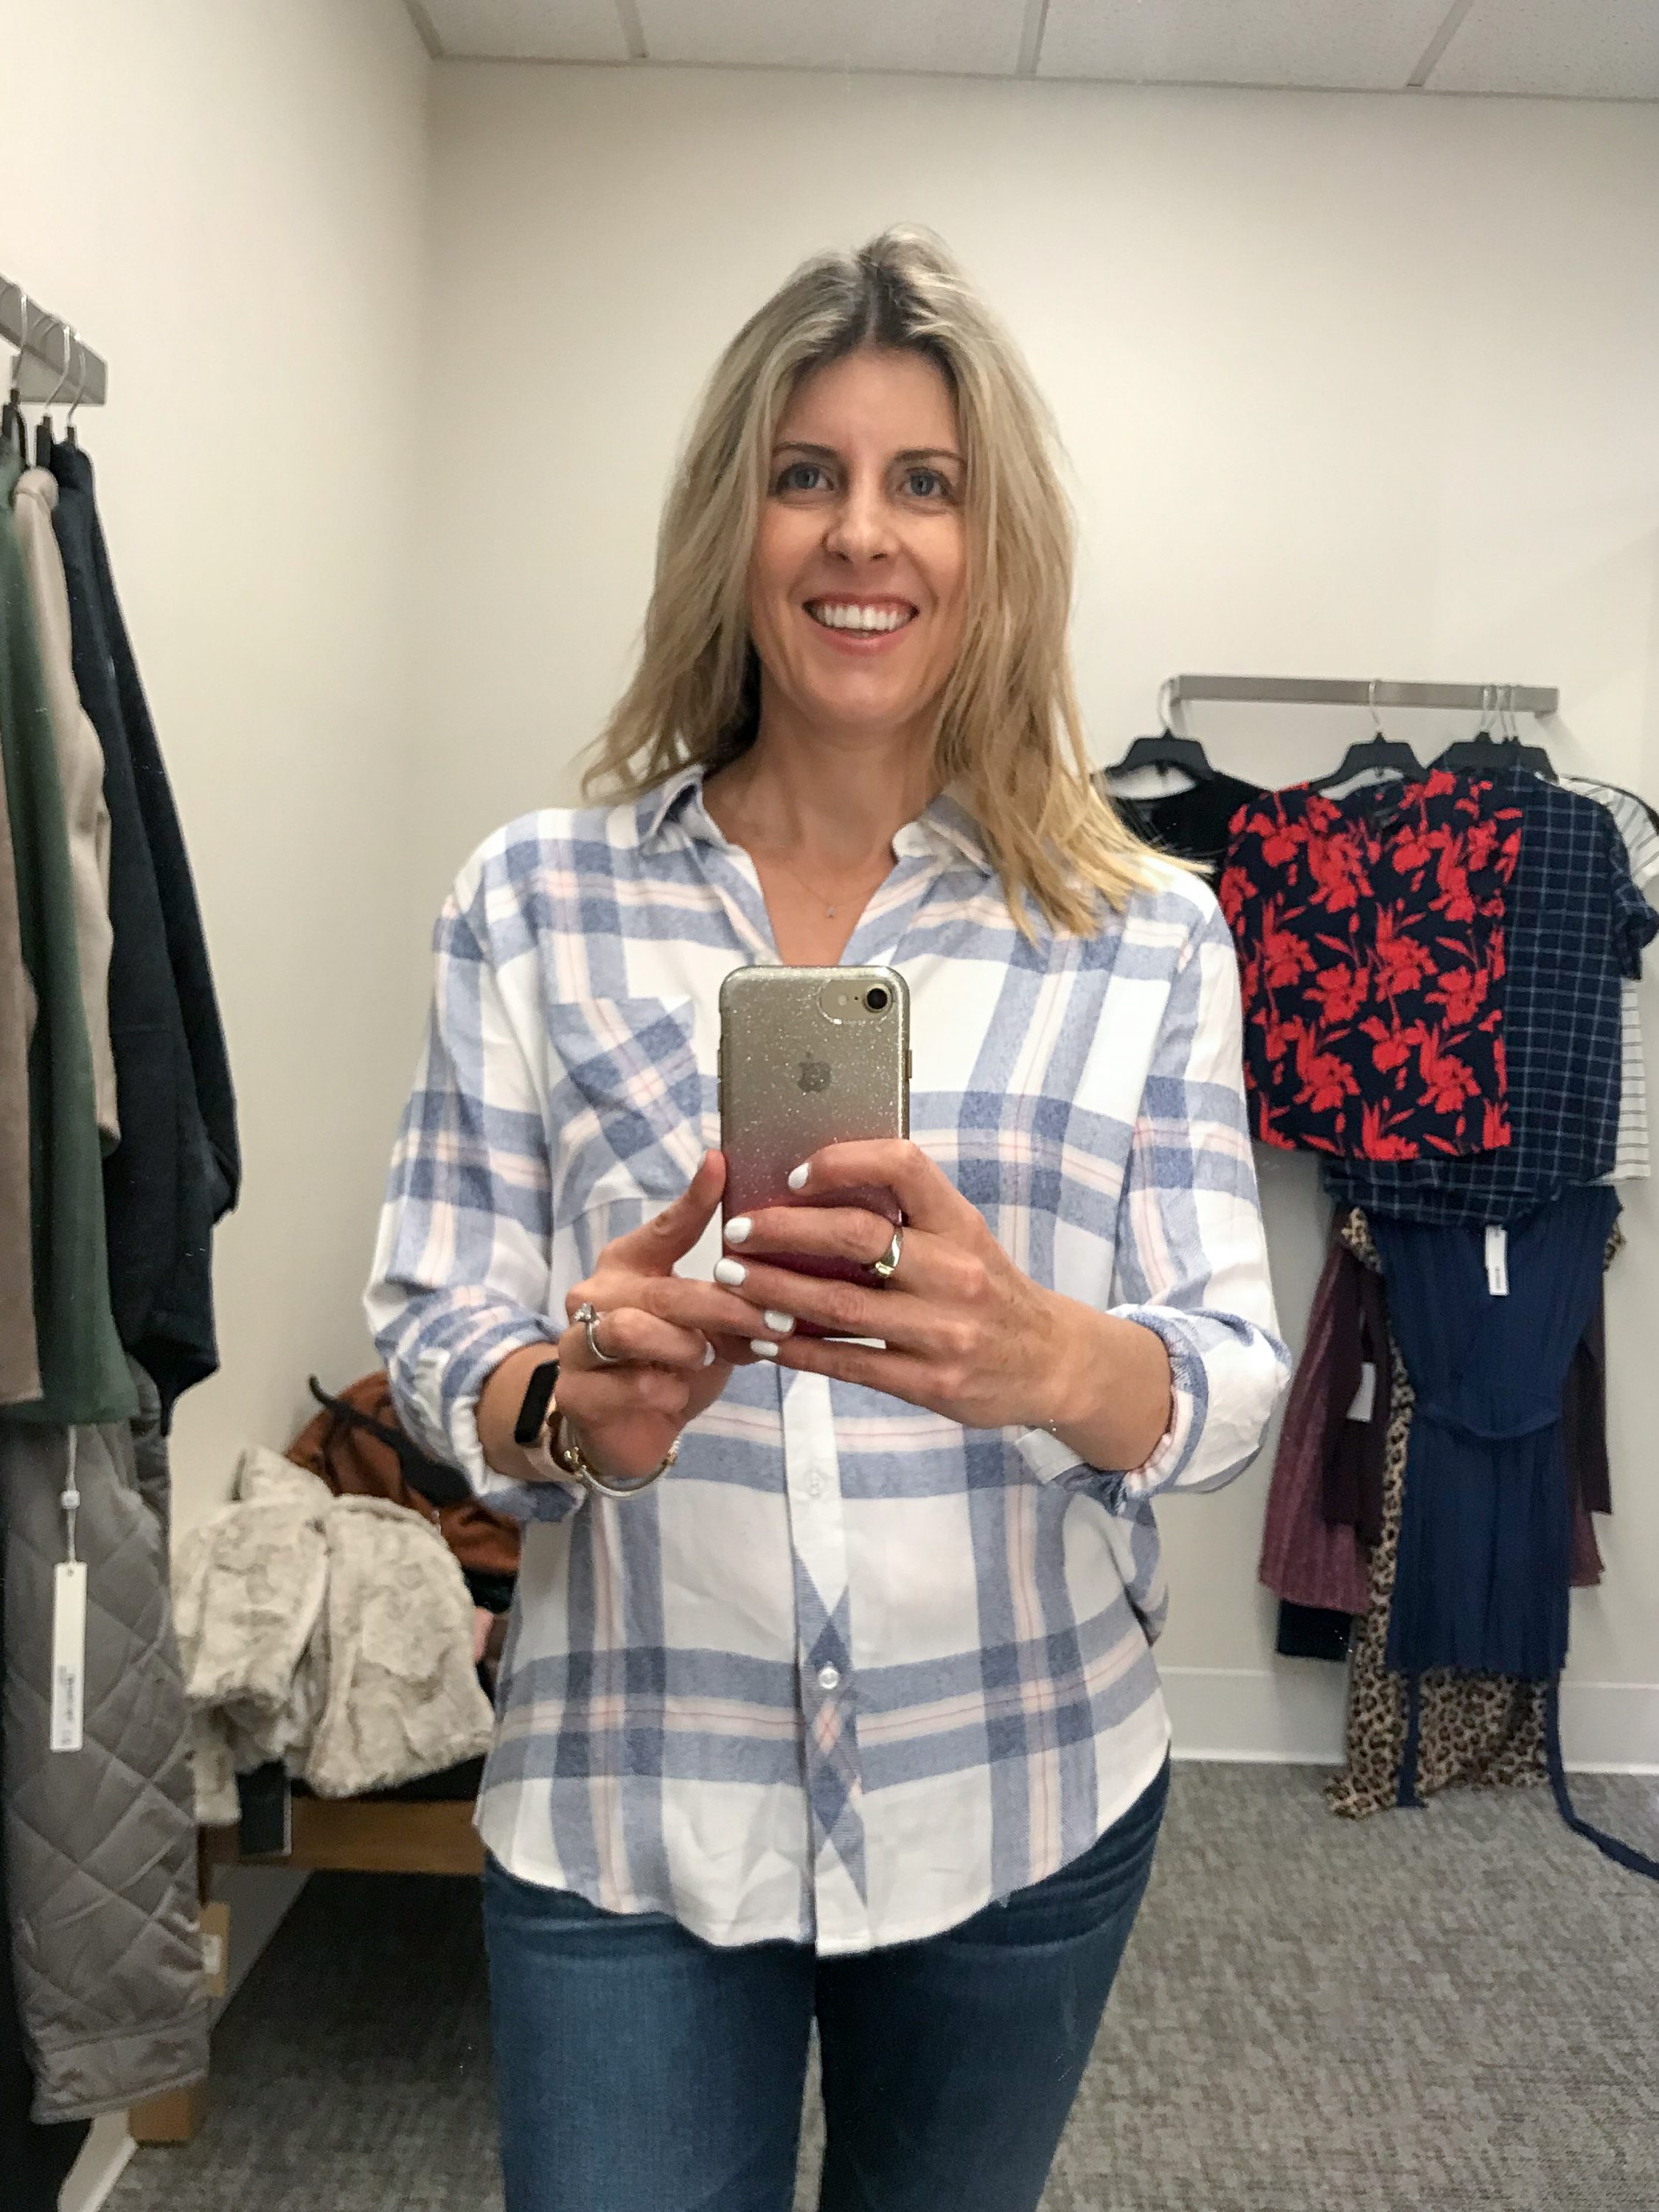 Nordstrom anniversary sale dressing room selfies